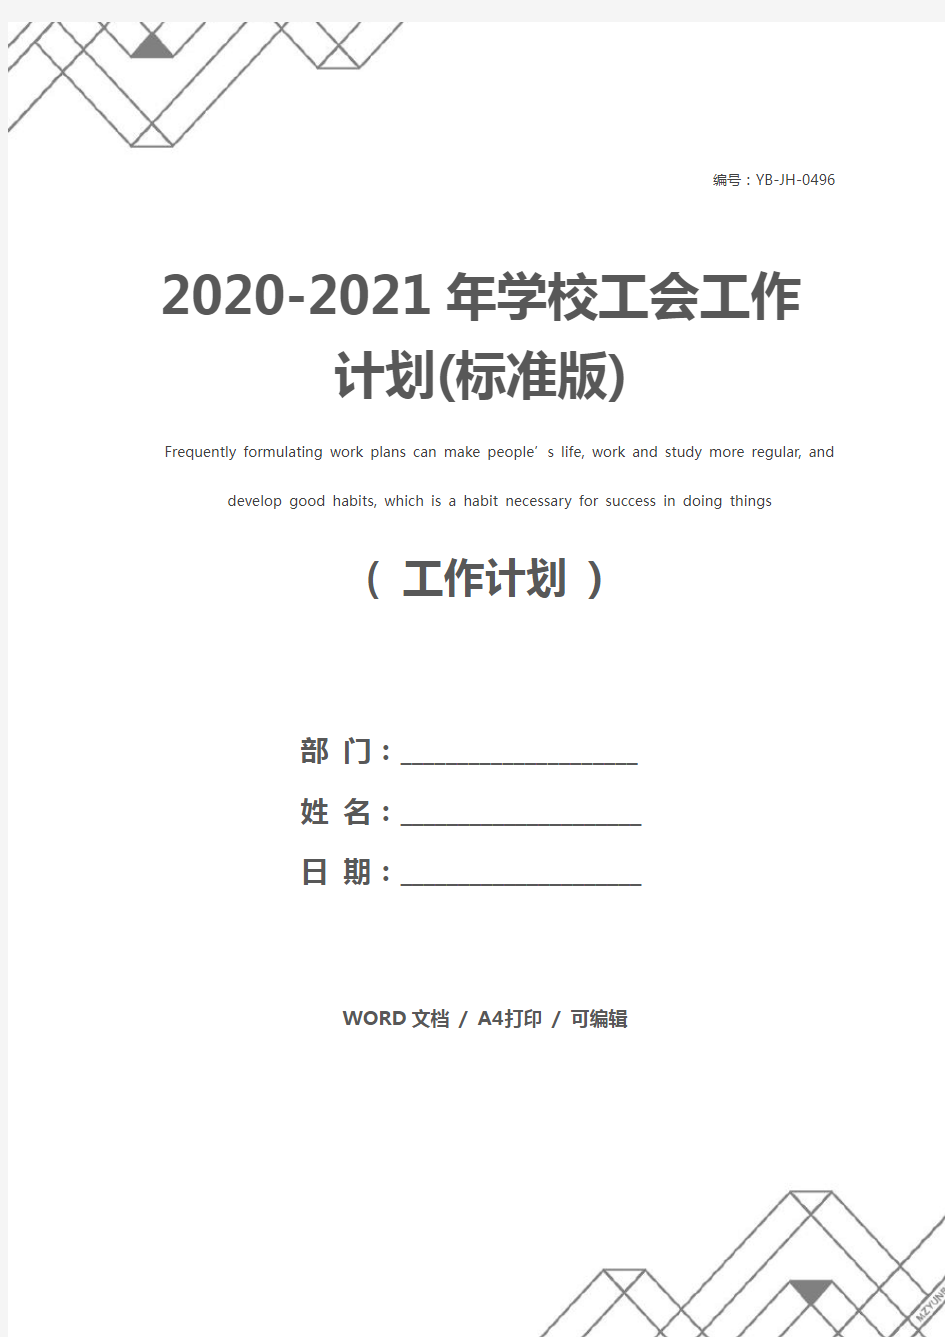 2020-2021年学校工会工作计划(标准版)